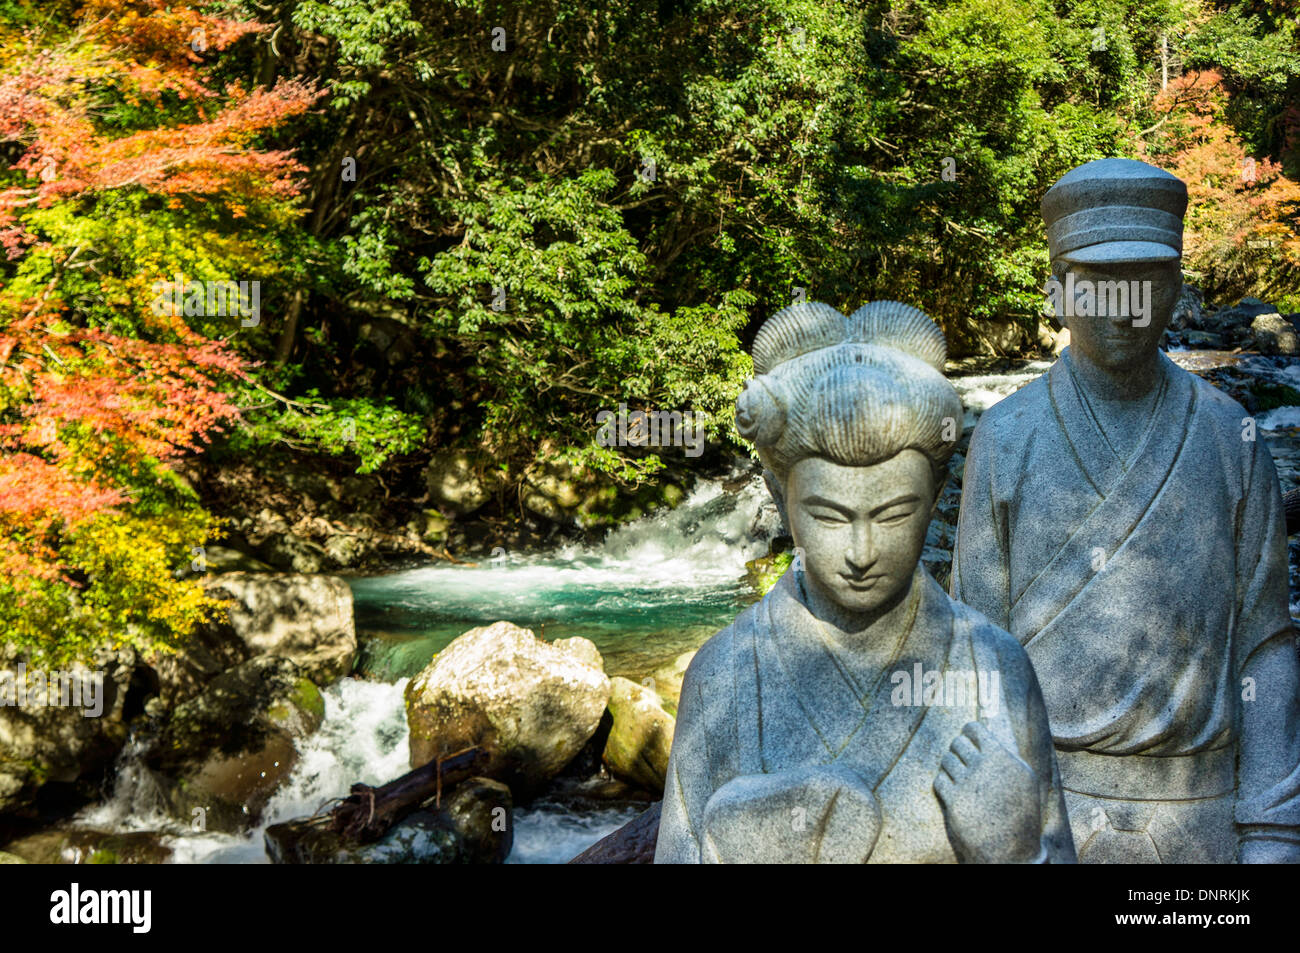 Statue en pierre de l'histoire de "La Danseuse d'Izu', préfecture de Shizuoka, Japon Banque D'Images